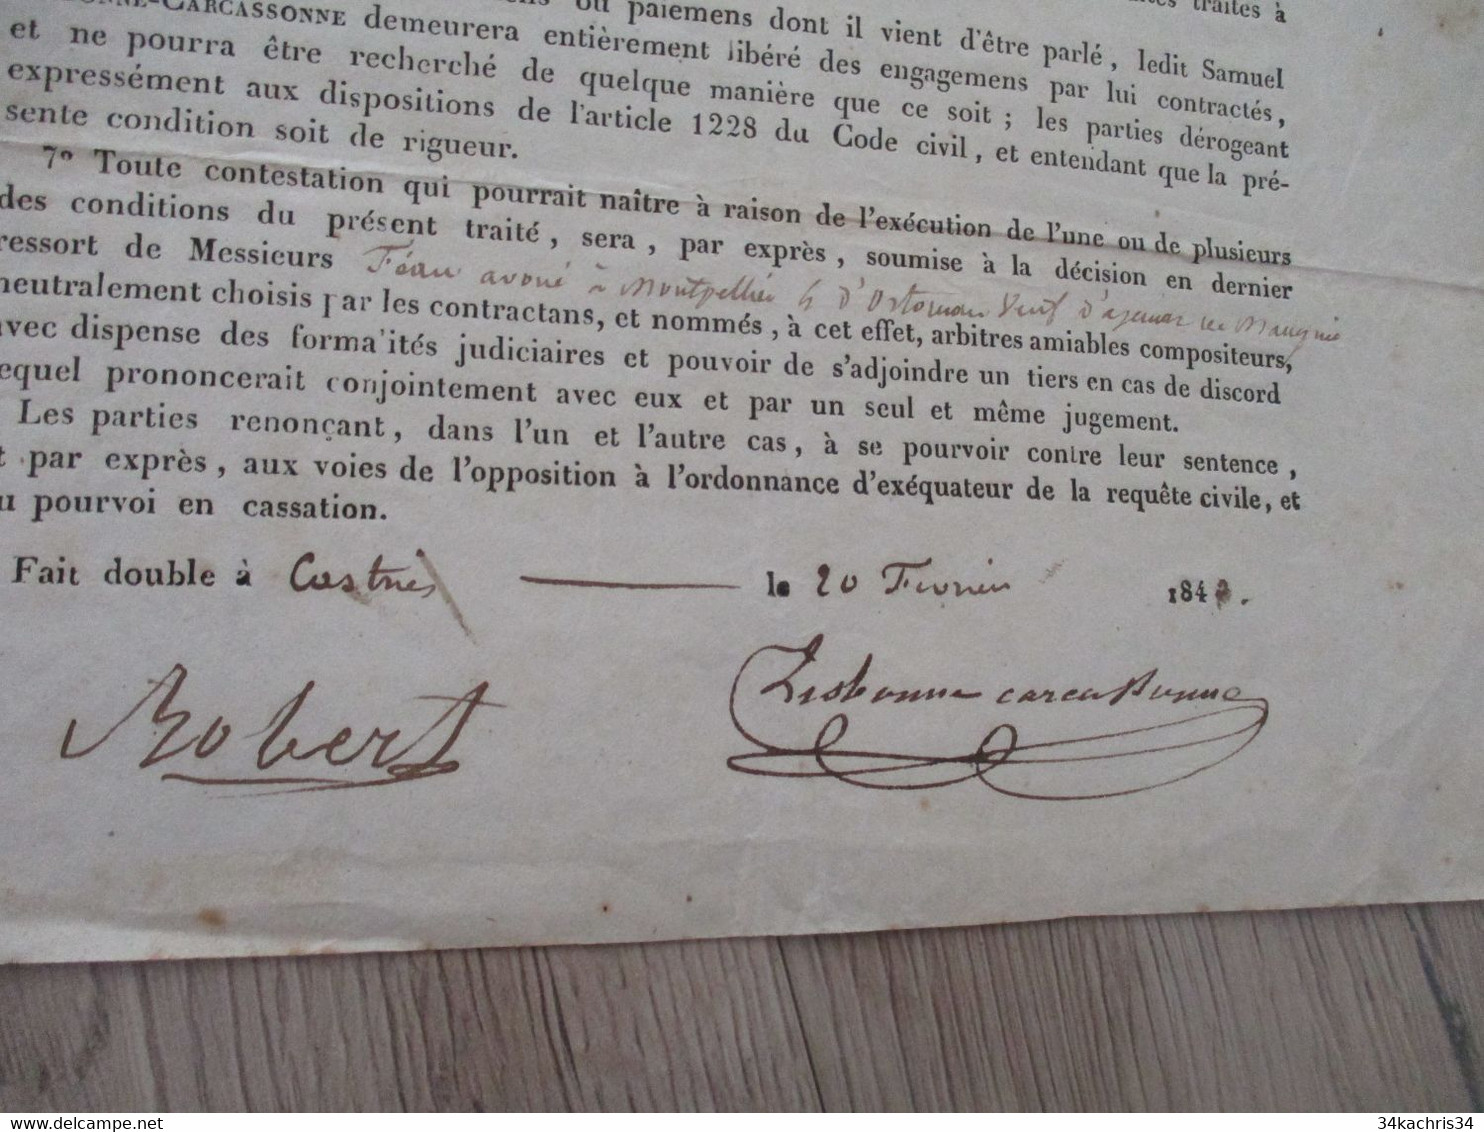 JF  Hérault   Vendargues Convention Lisbonne Carcassonne/Robert Soumission  Tirage De La Classe 1842 Conscrits - Manuscripten